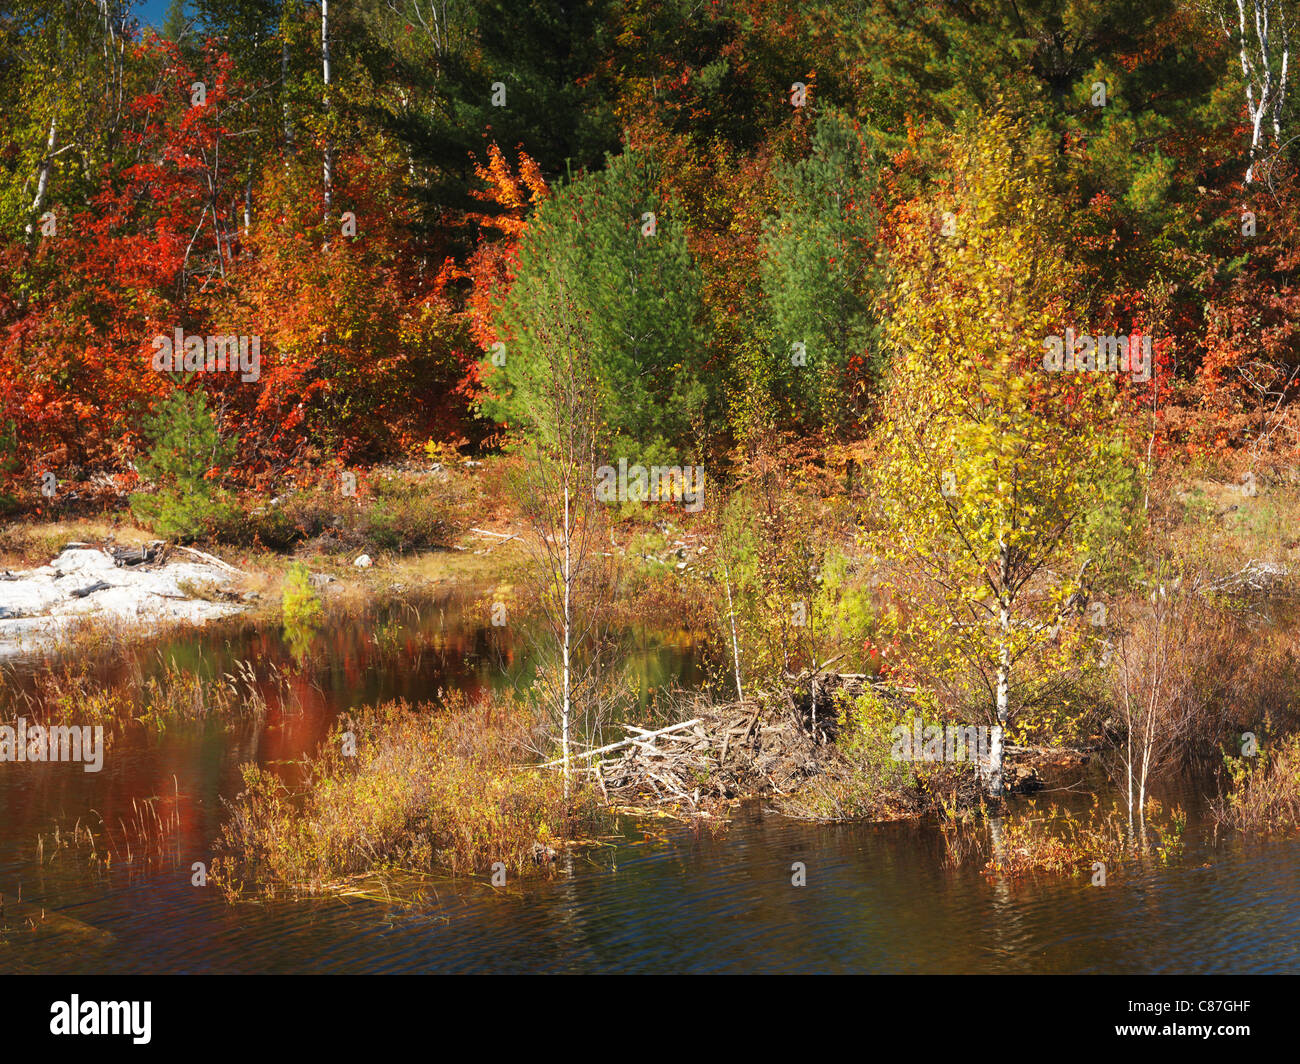 Beaver house dans un étang. Beau paysage de la nature de l'automne. Le Parc provincial Killarney, Ontario, Canada Banque D'Images